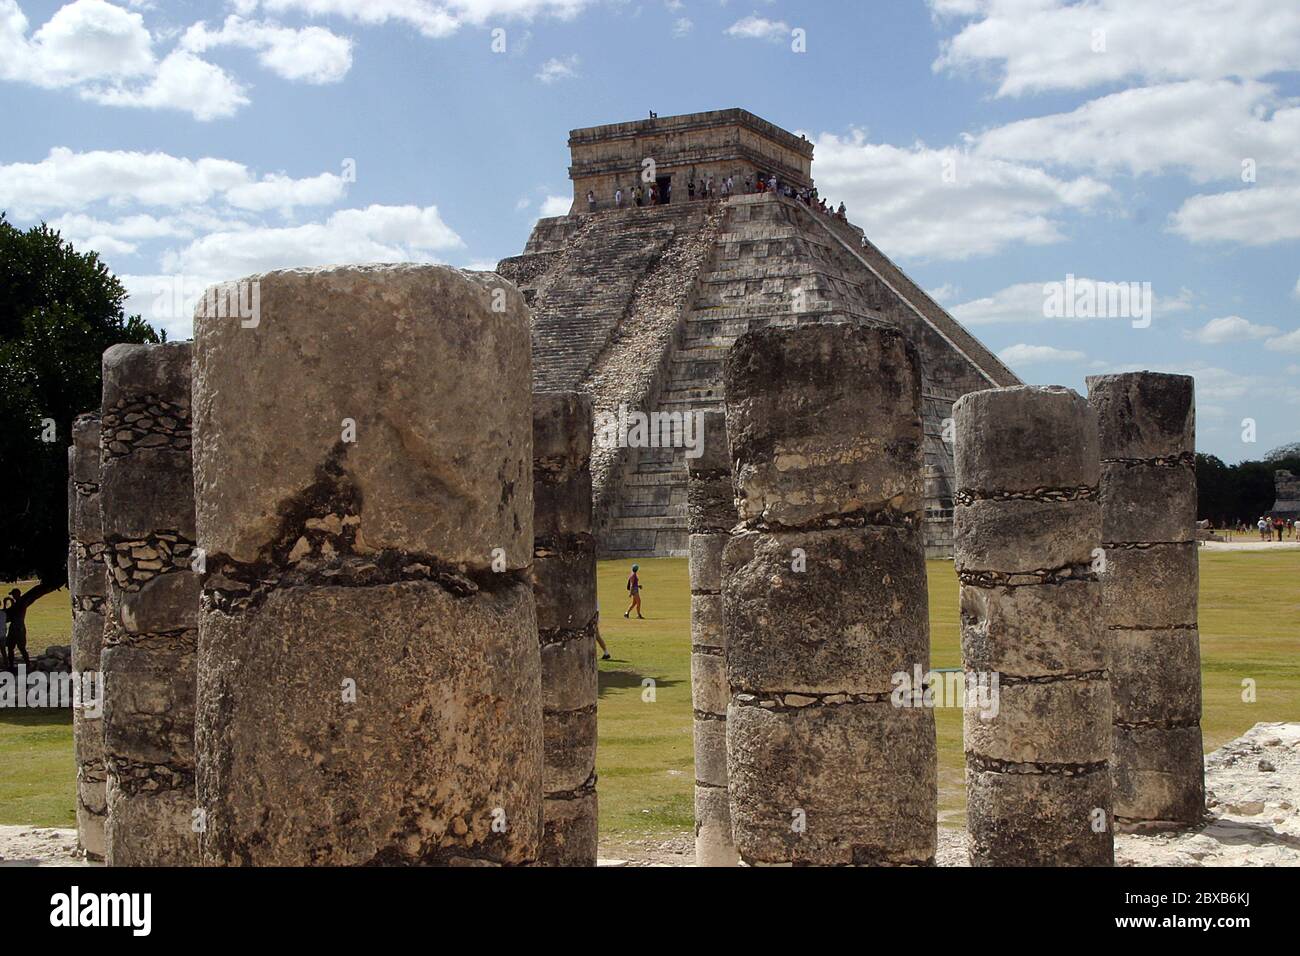 Zona arqueologica de Chichen Itza Zona arqueológica   Chichén ItzáChichén Itzá maya: (Chichén) Boca del pozo;   de los (Itzá) brujos de agua.   Es uno de los principales sitios arqueológicos de la   península de Yucatán, en México, ubicado en el municipio de Tinum.  *Photo:*©Francisco* Morales/DAMMPHOTO.COM/NORTEPHOTO Stock Photo